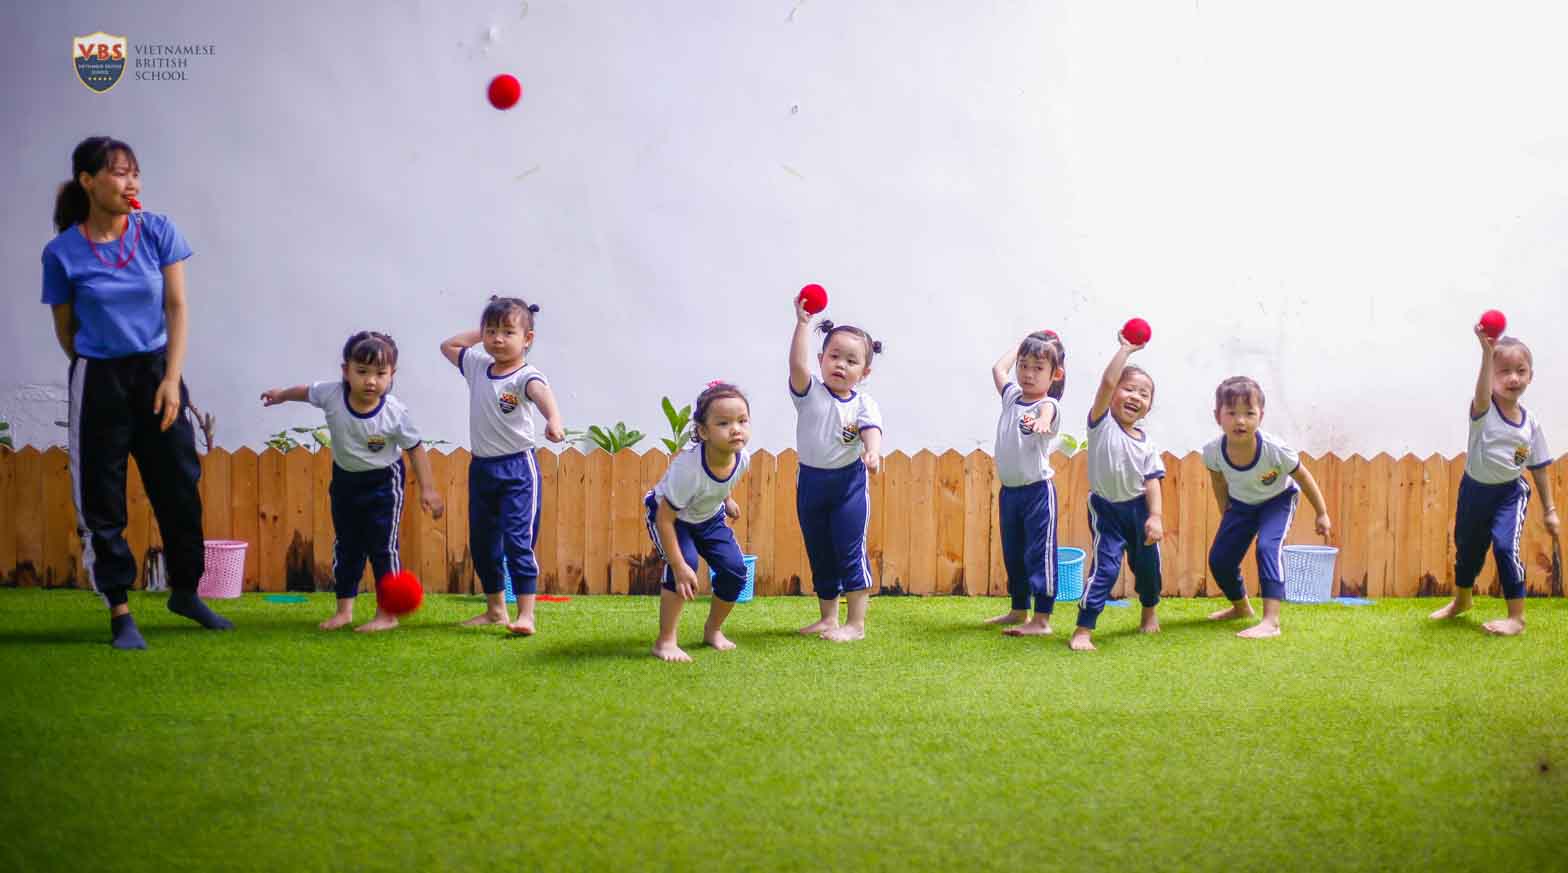 Bóng Ném là môn thể thao cho hoạt động rèn luyện thể chất cho các bé.